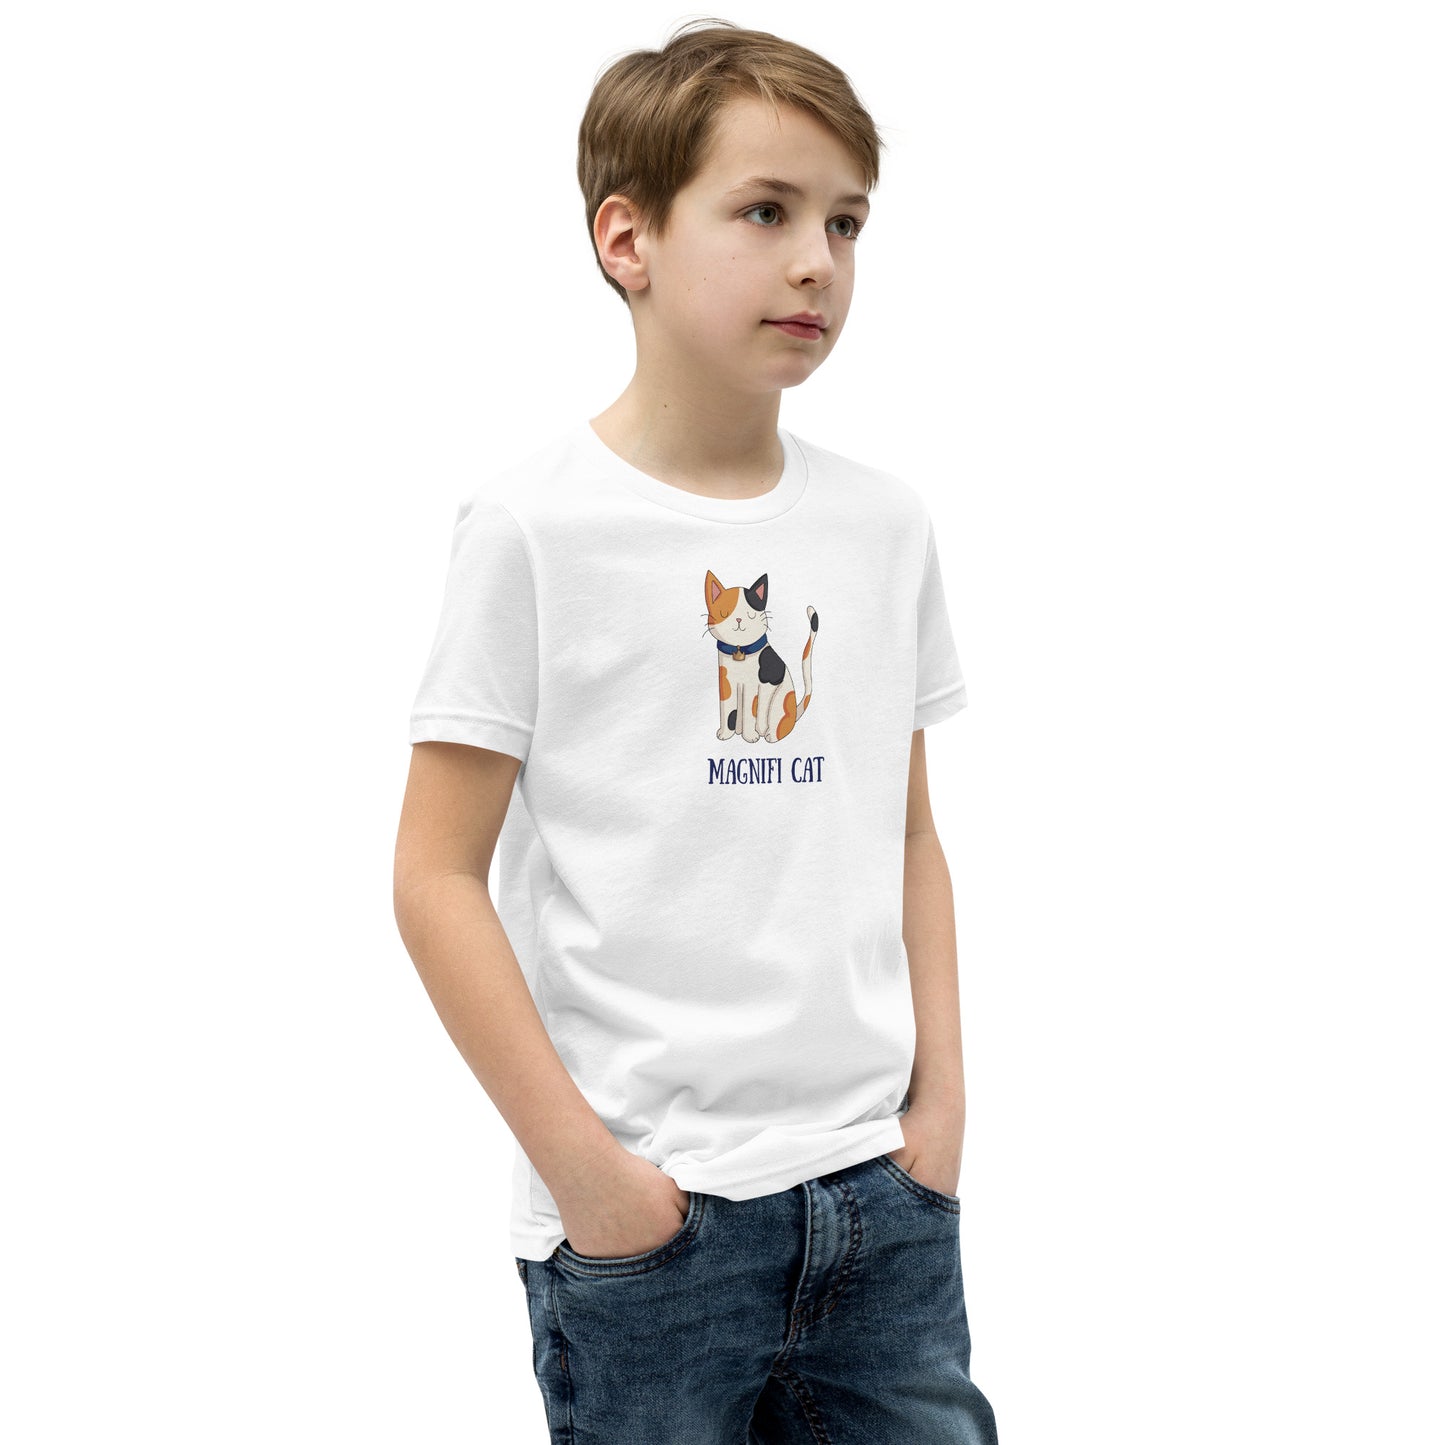 Magnifi Cat Kids T-Shirt